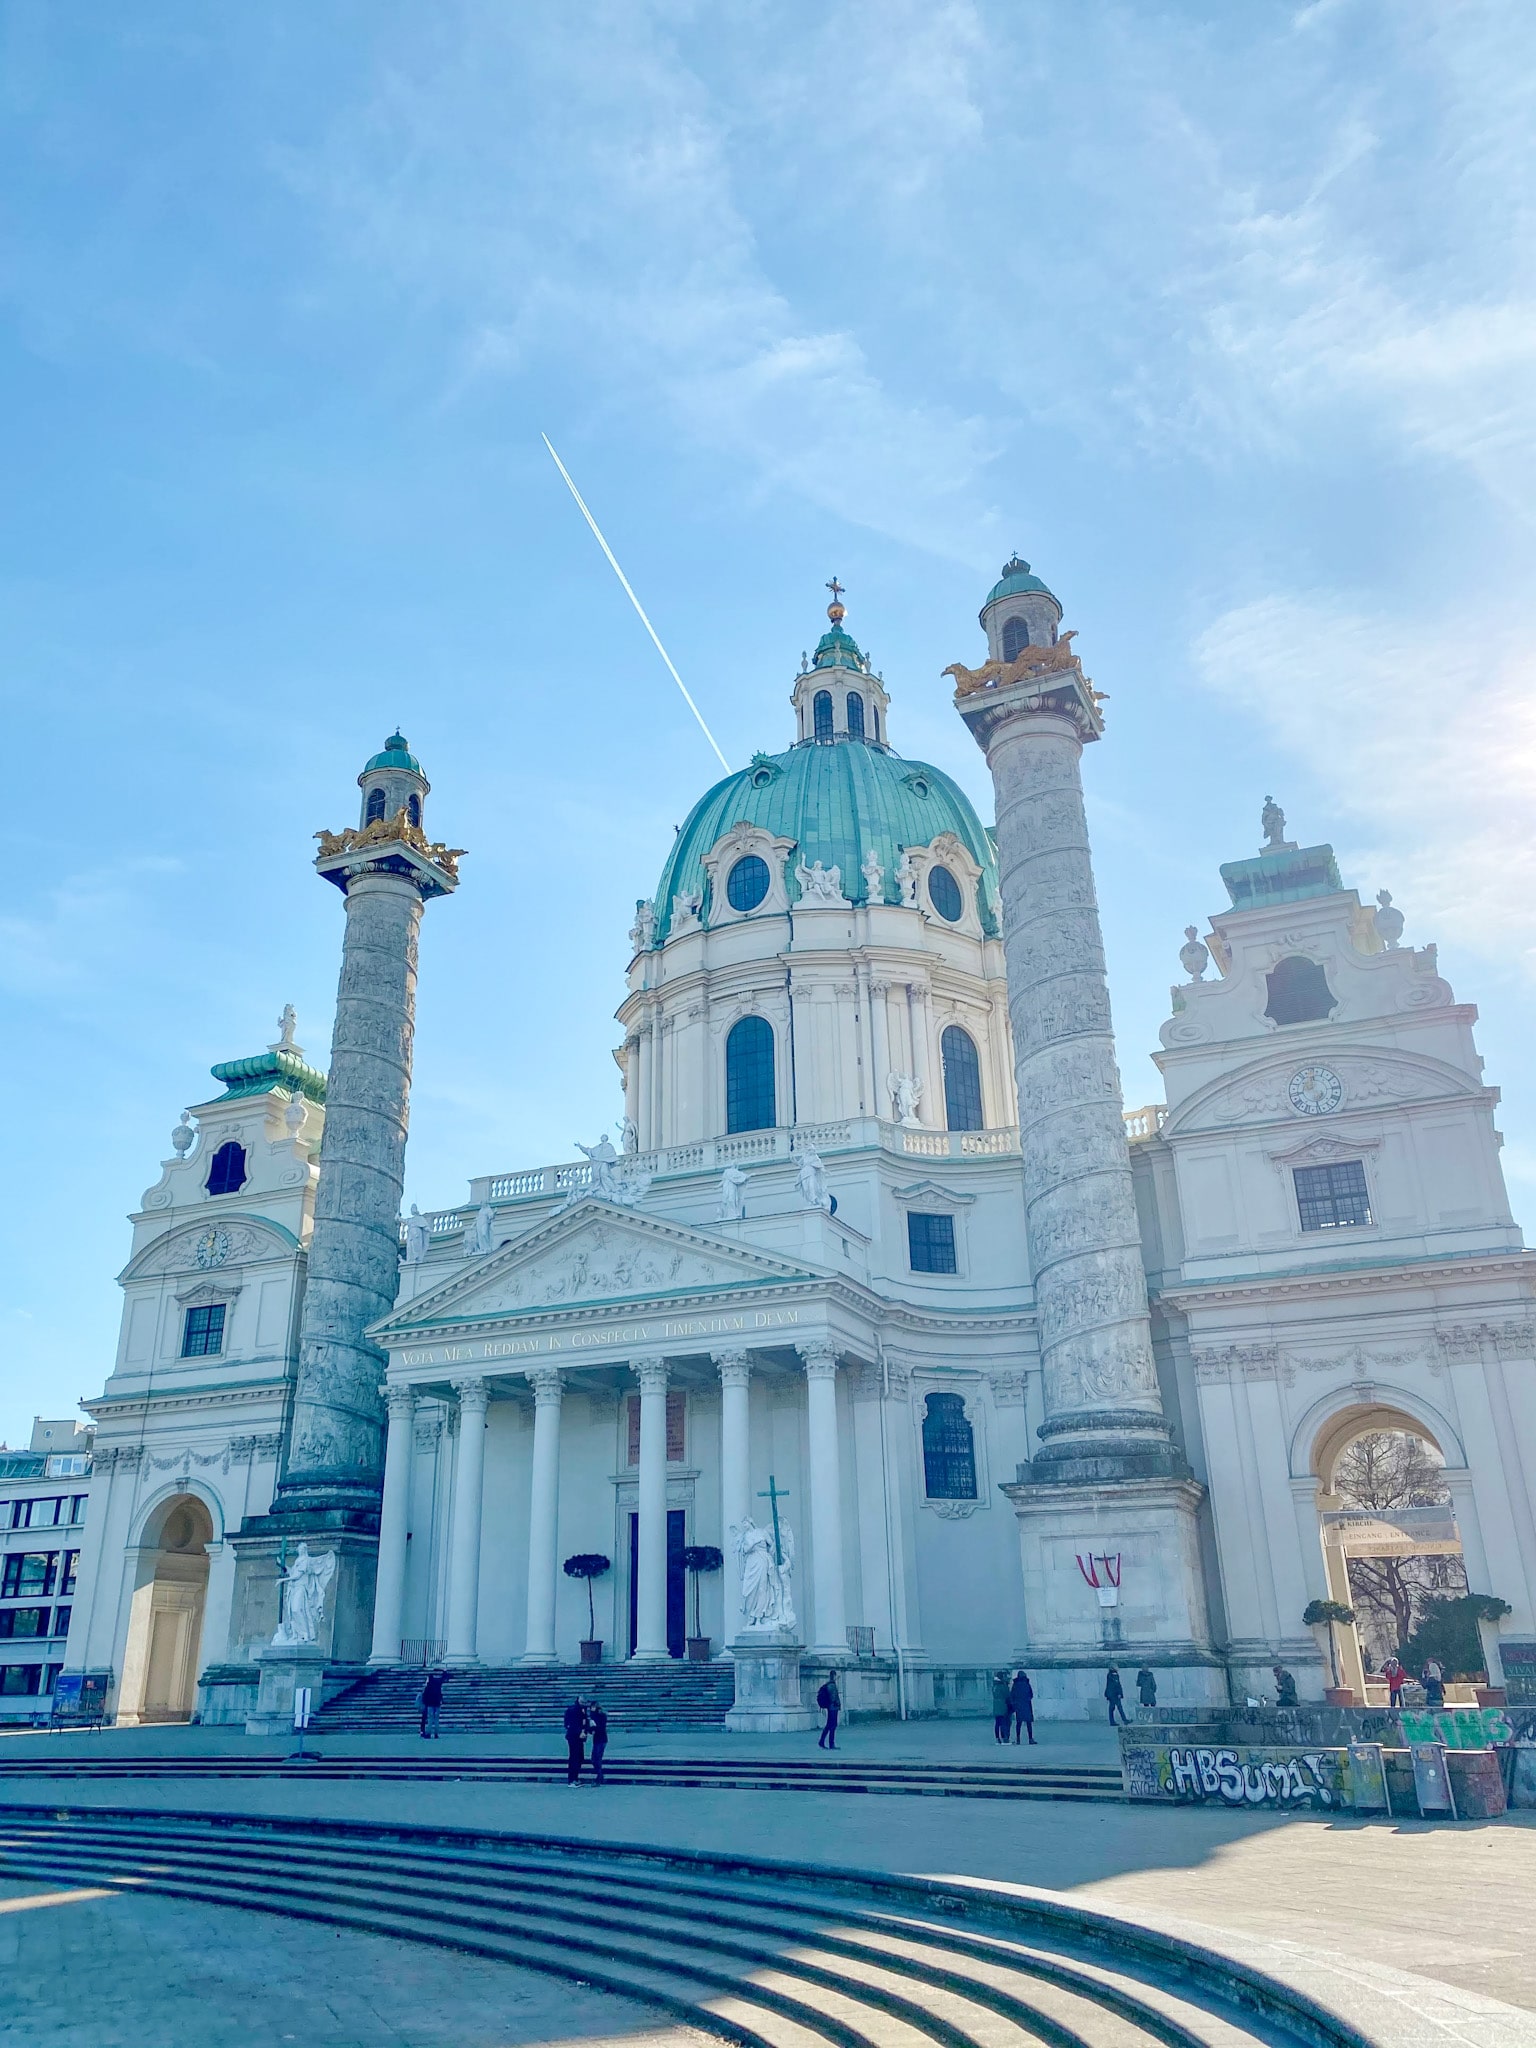 St. Charles' Church (Karlskirche) in Vienna, Austria.